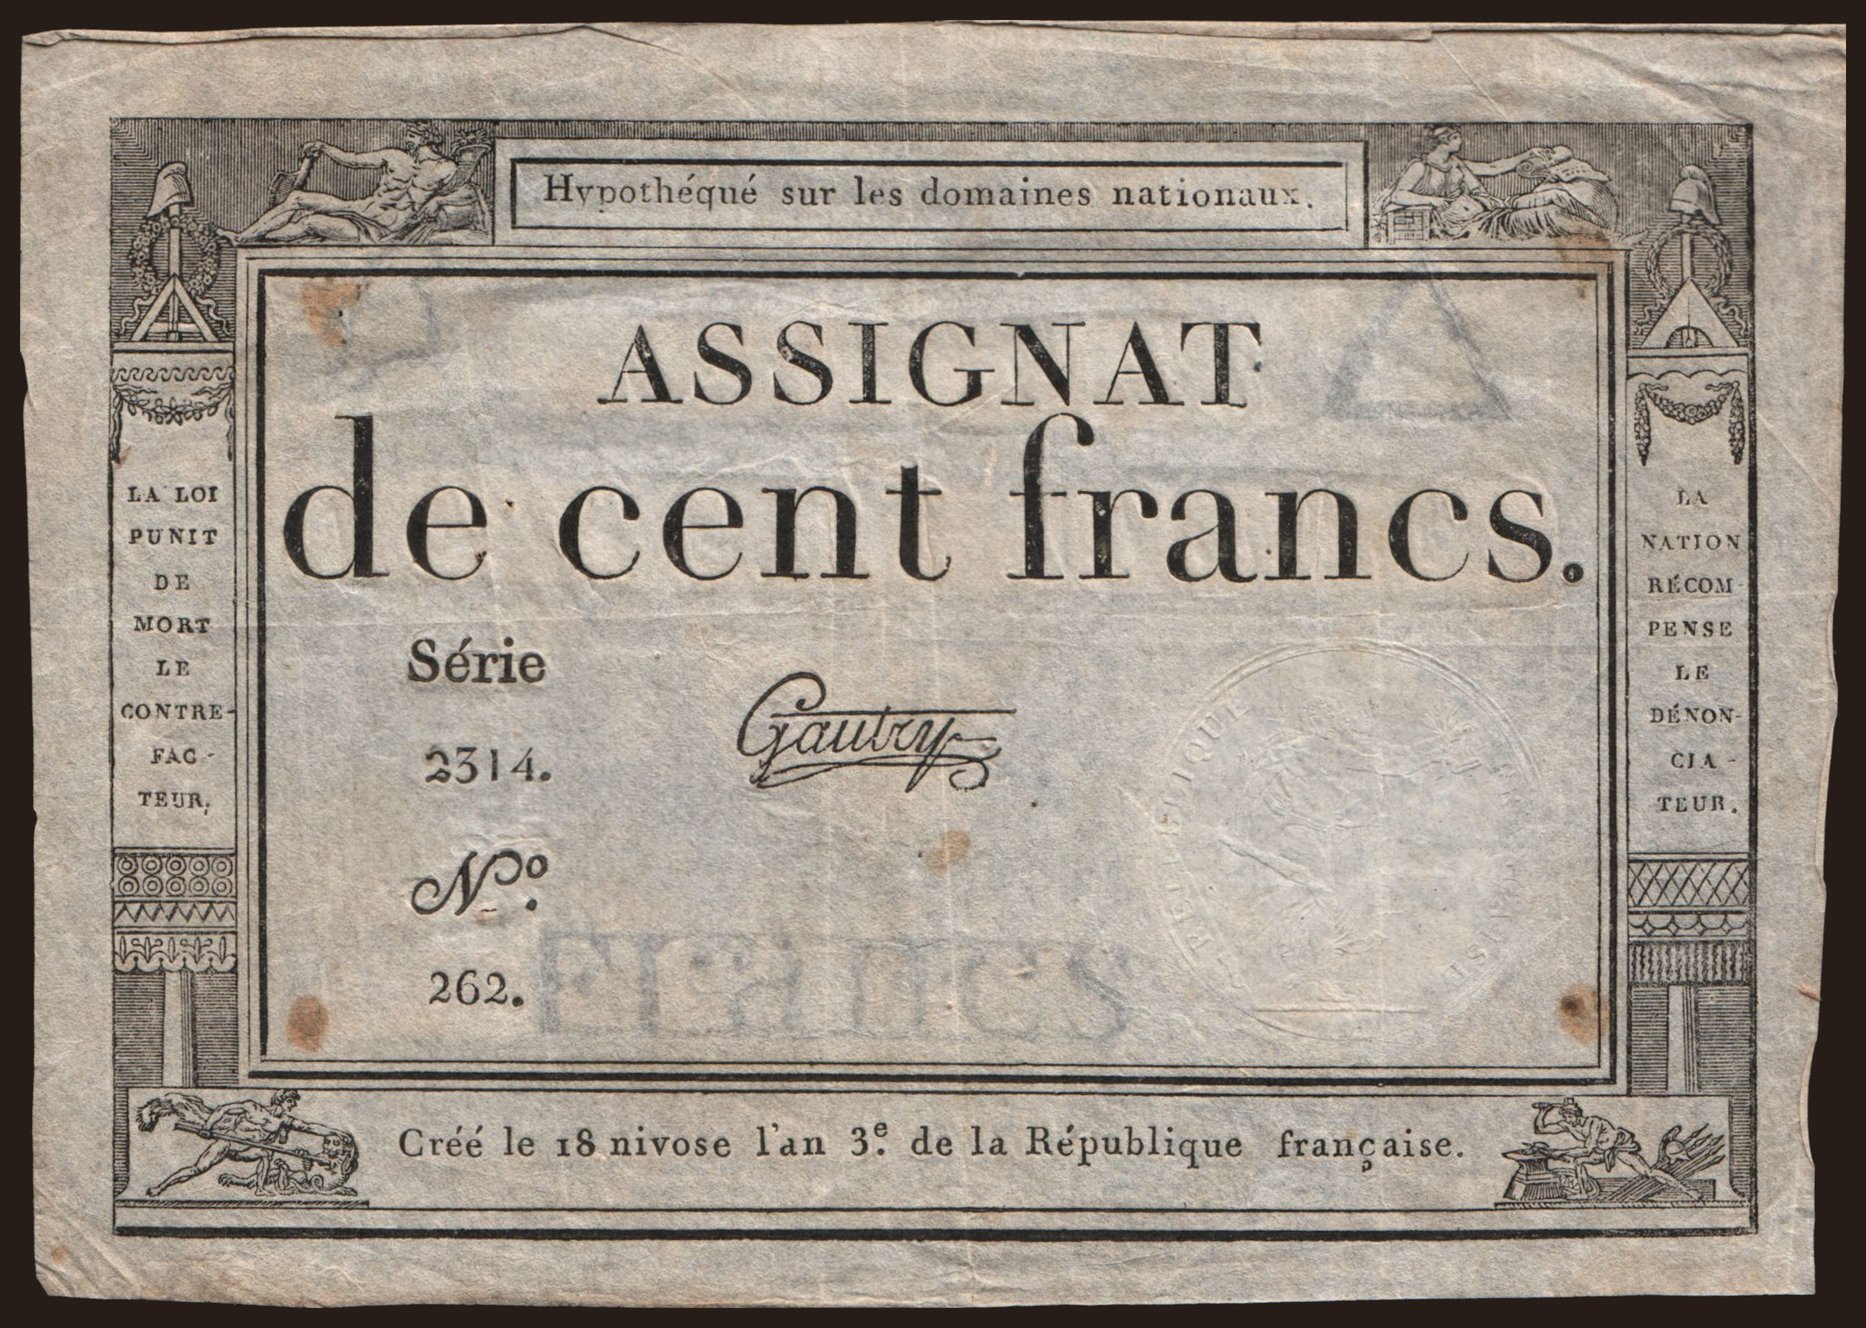 100 francs, 1795